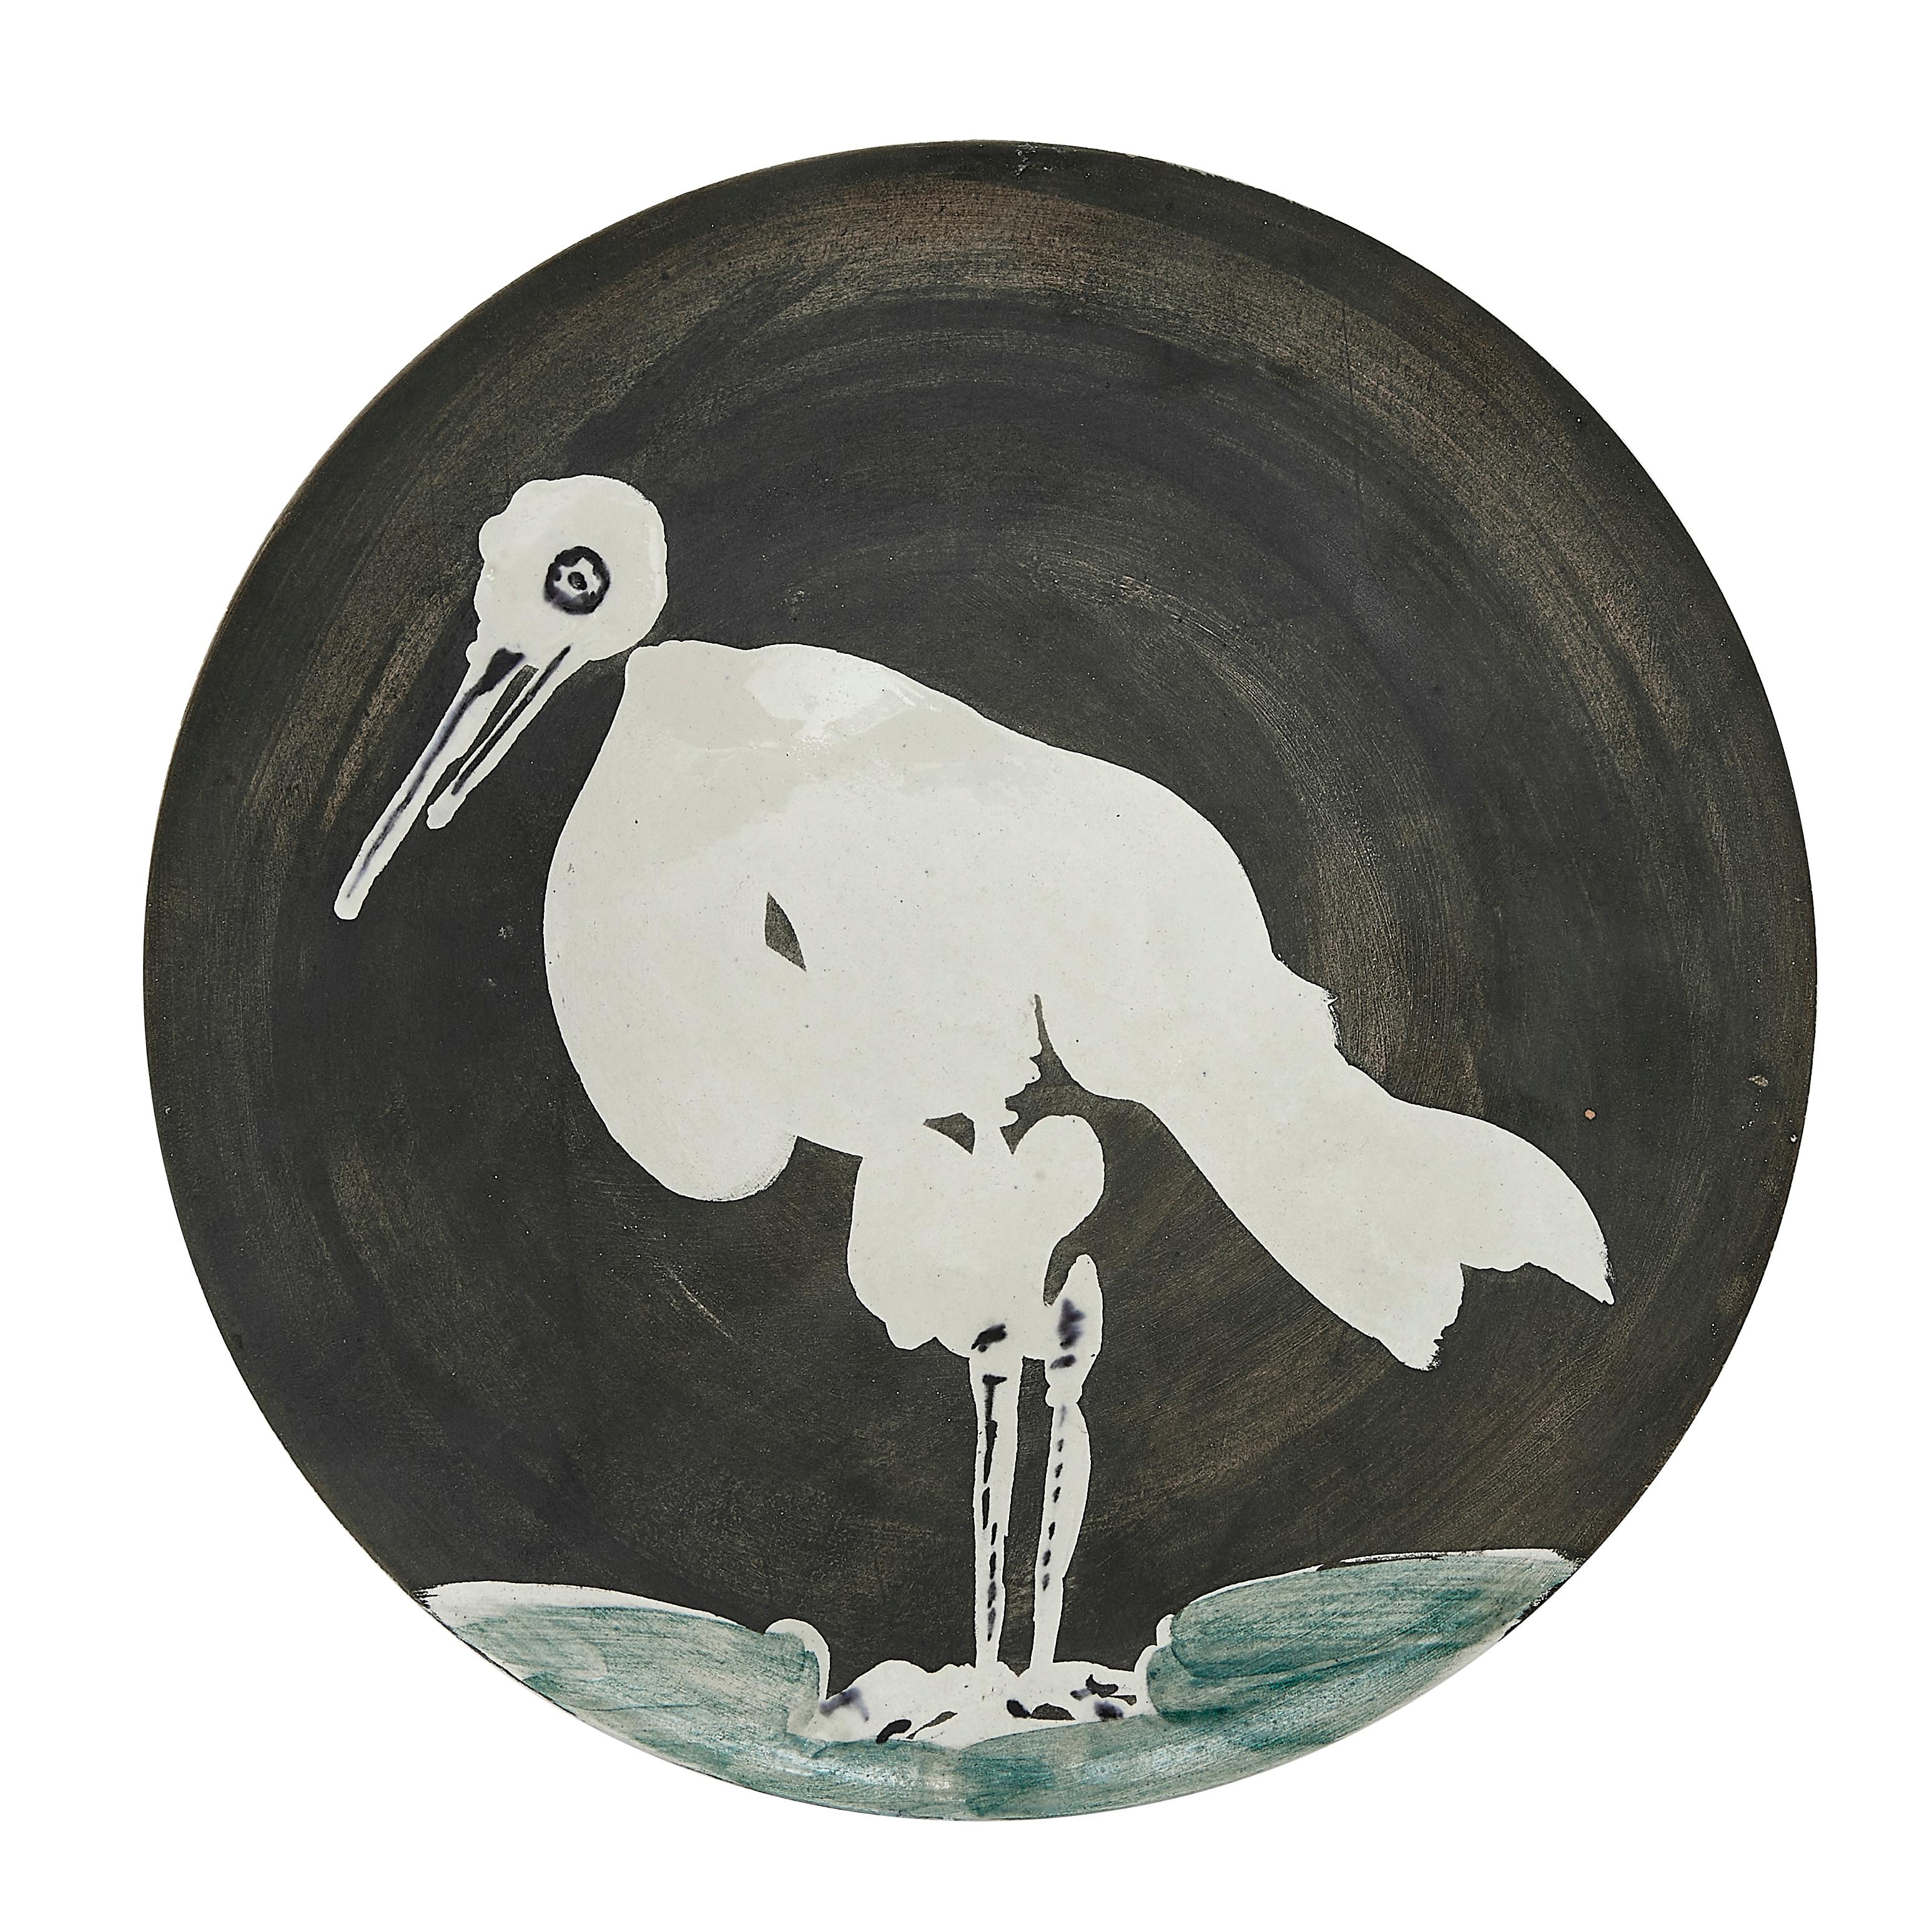 PABLO PICASSO (1881-1973) 
Oiseau n° 83 (A. R. 483)

Assiette Terre de faïence, 1963, numérotée 183/200, titrée, inscrite " Edition Picasso " et " Madoura ", partiellement émaillée et peinte.